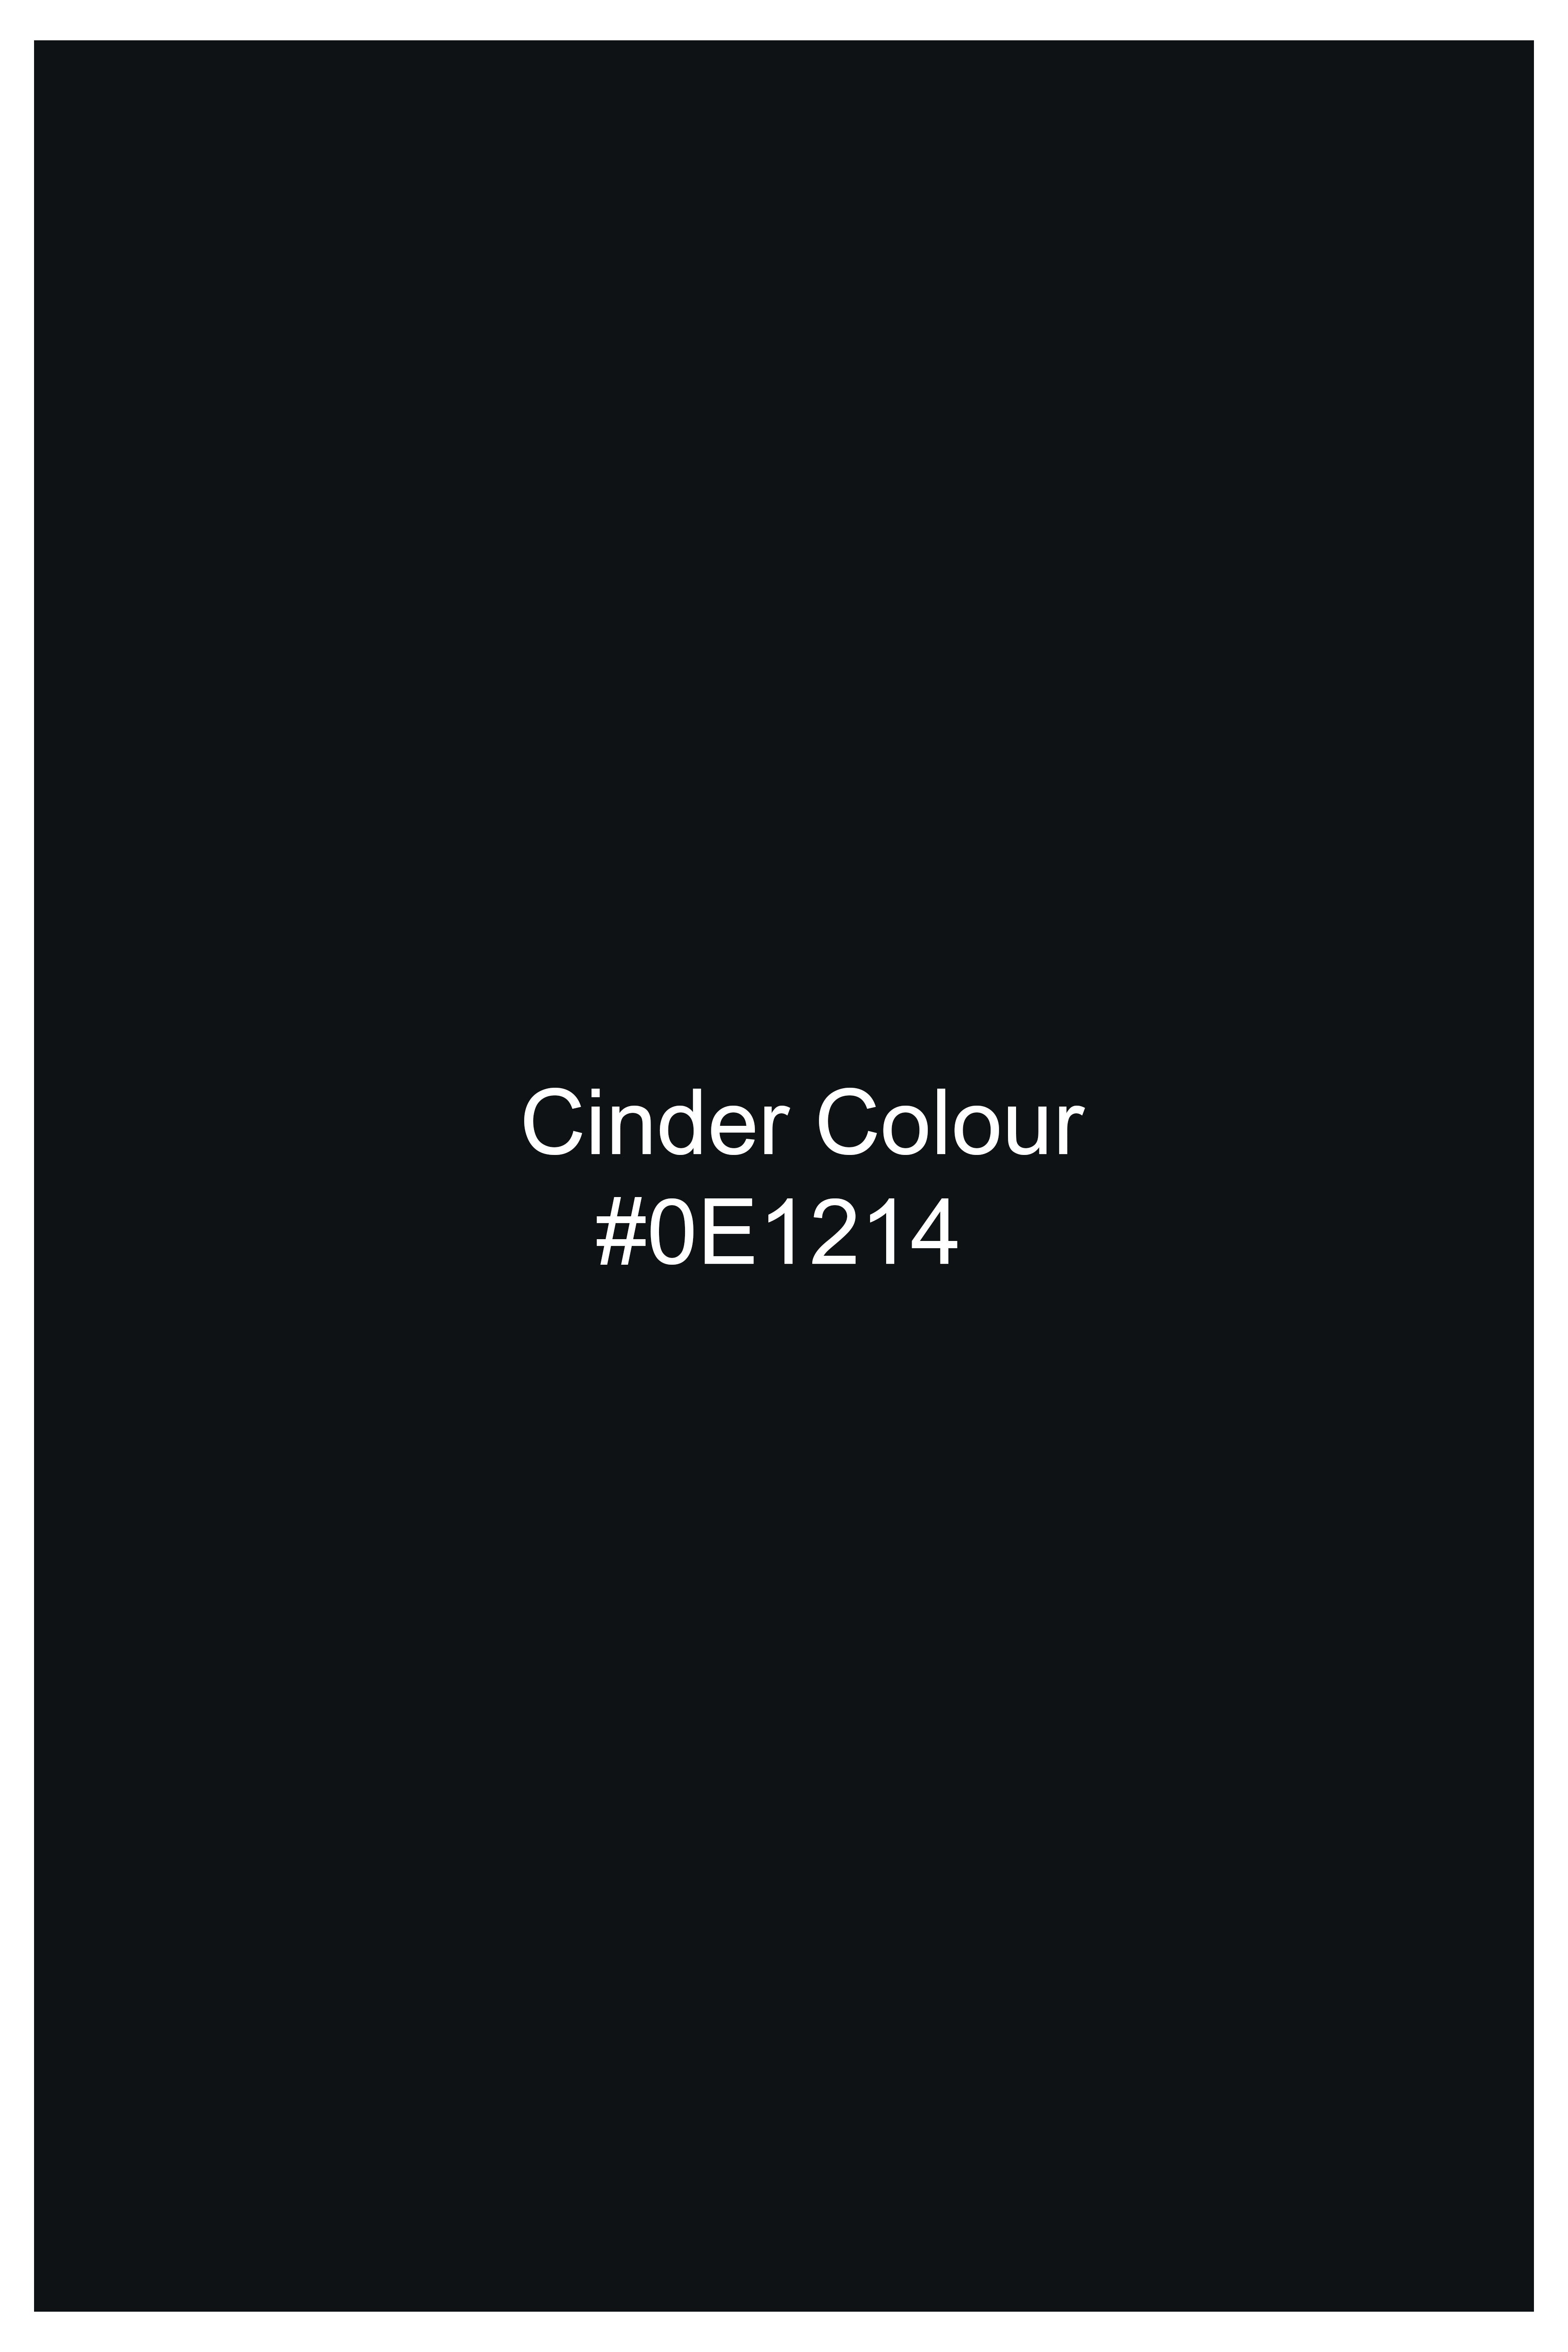 Cinder Black Textured Single Breasted Designer Blazer BL2868-SB-D435-36, BL2868-SB-D435-38, BL2868-SB-D435-40, BL2868-SB-D435-42, BL2868-SB-D435-44, BL2868-SB-D435-46, BL2868-SB-D435-48, BL2868-SB-D435-50, BL2868-SB-D435-68-SB, BL2868-SB-D435-54, BL2868-SB-D435-56, BL2868-SB-D435-58, BL2868-SB-D435-60